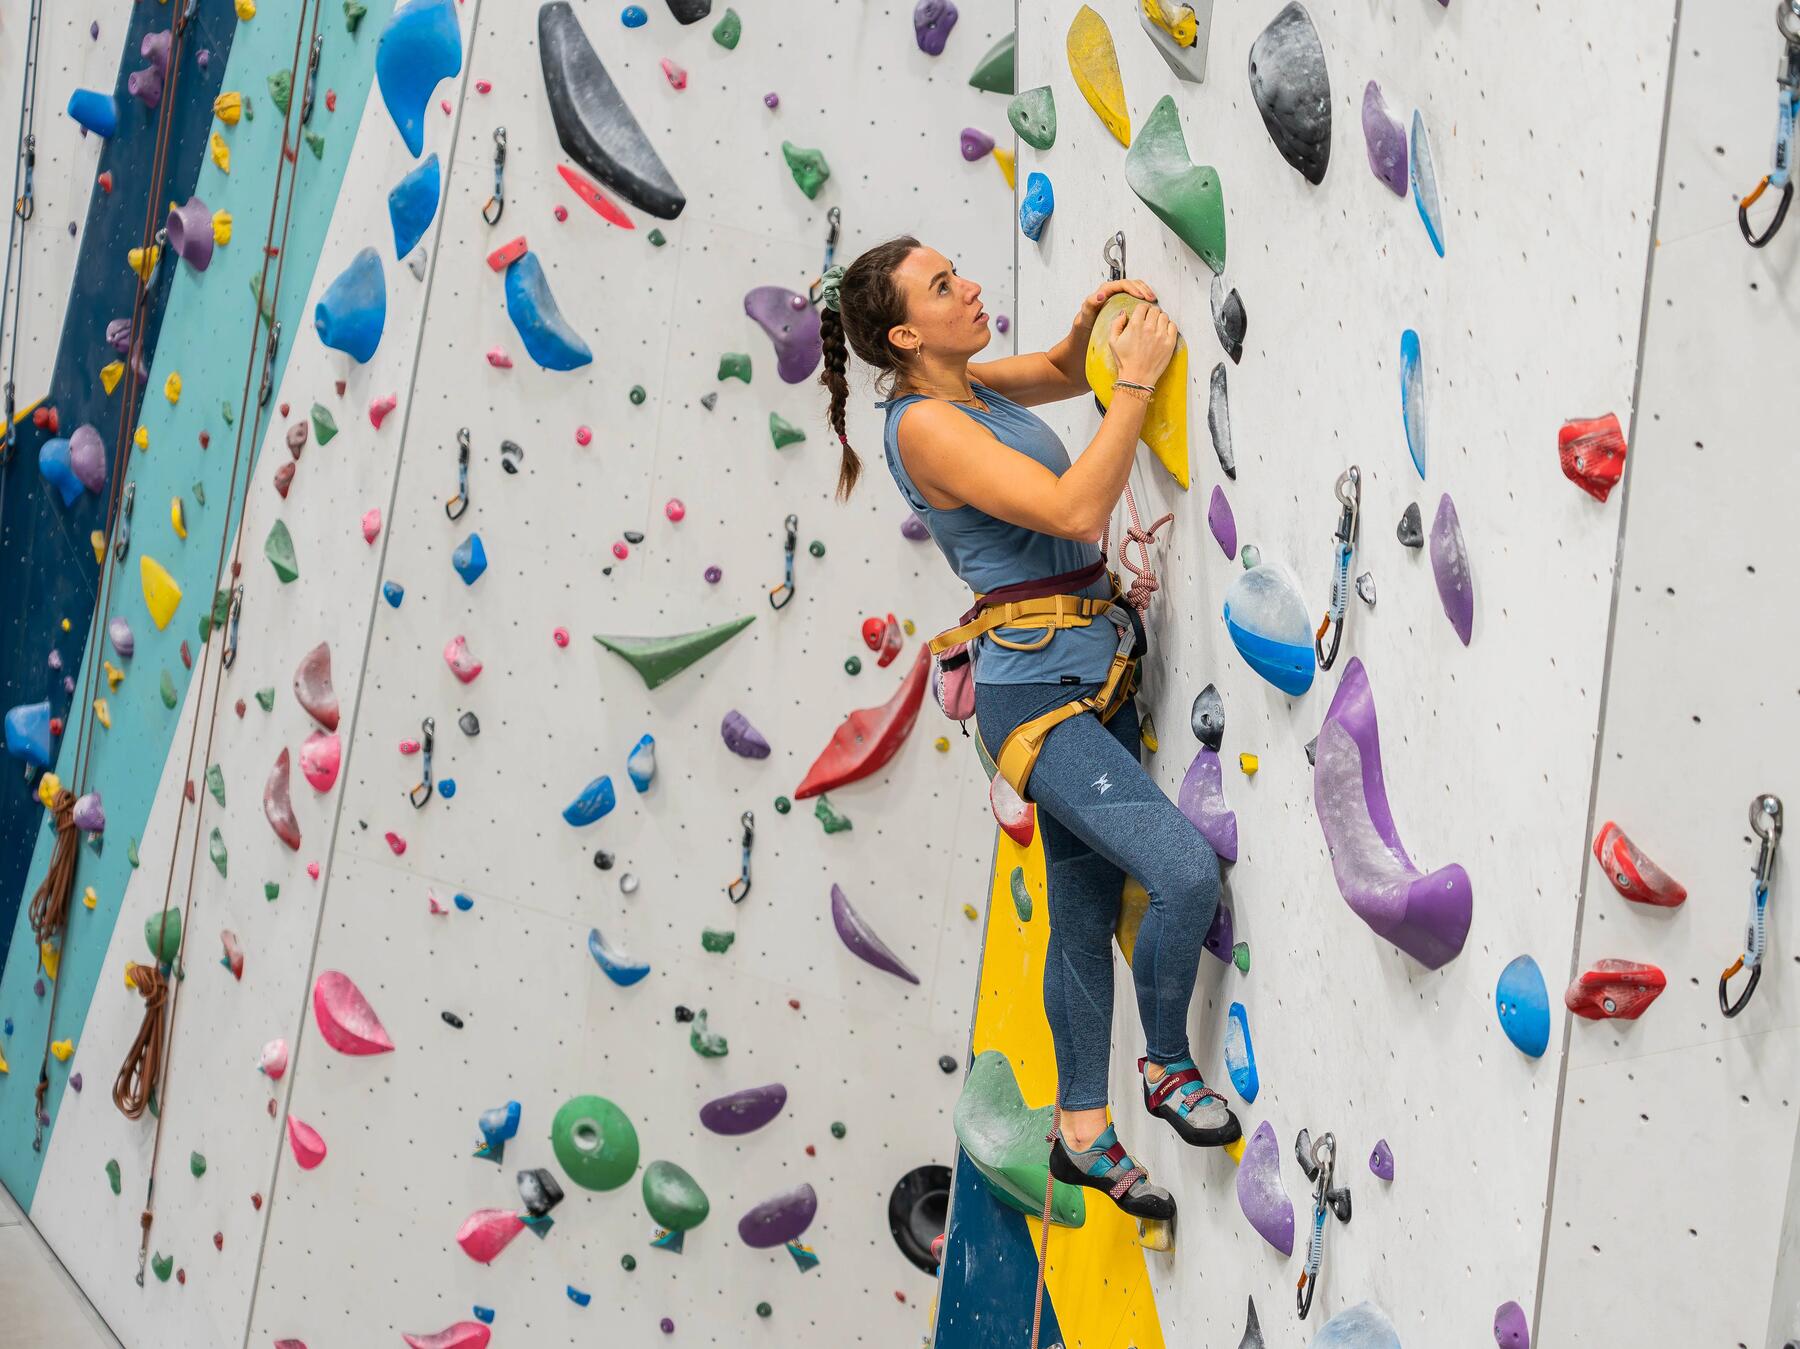 Kobieta w uprzęży i butach wspinaczkowych trenująca wspinaczkę sportową na ściance wspinaczkowej